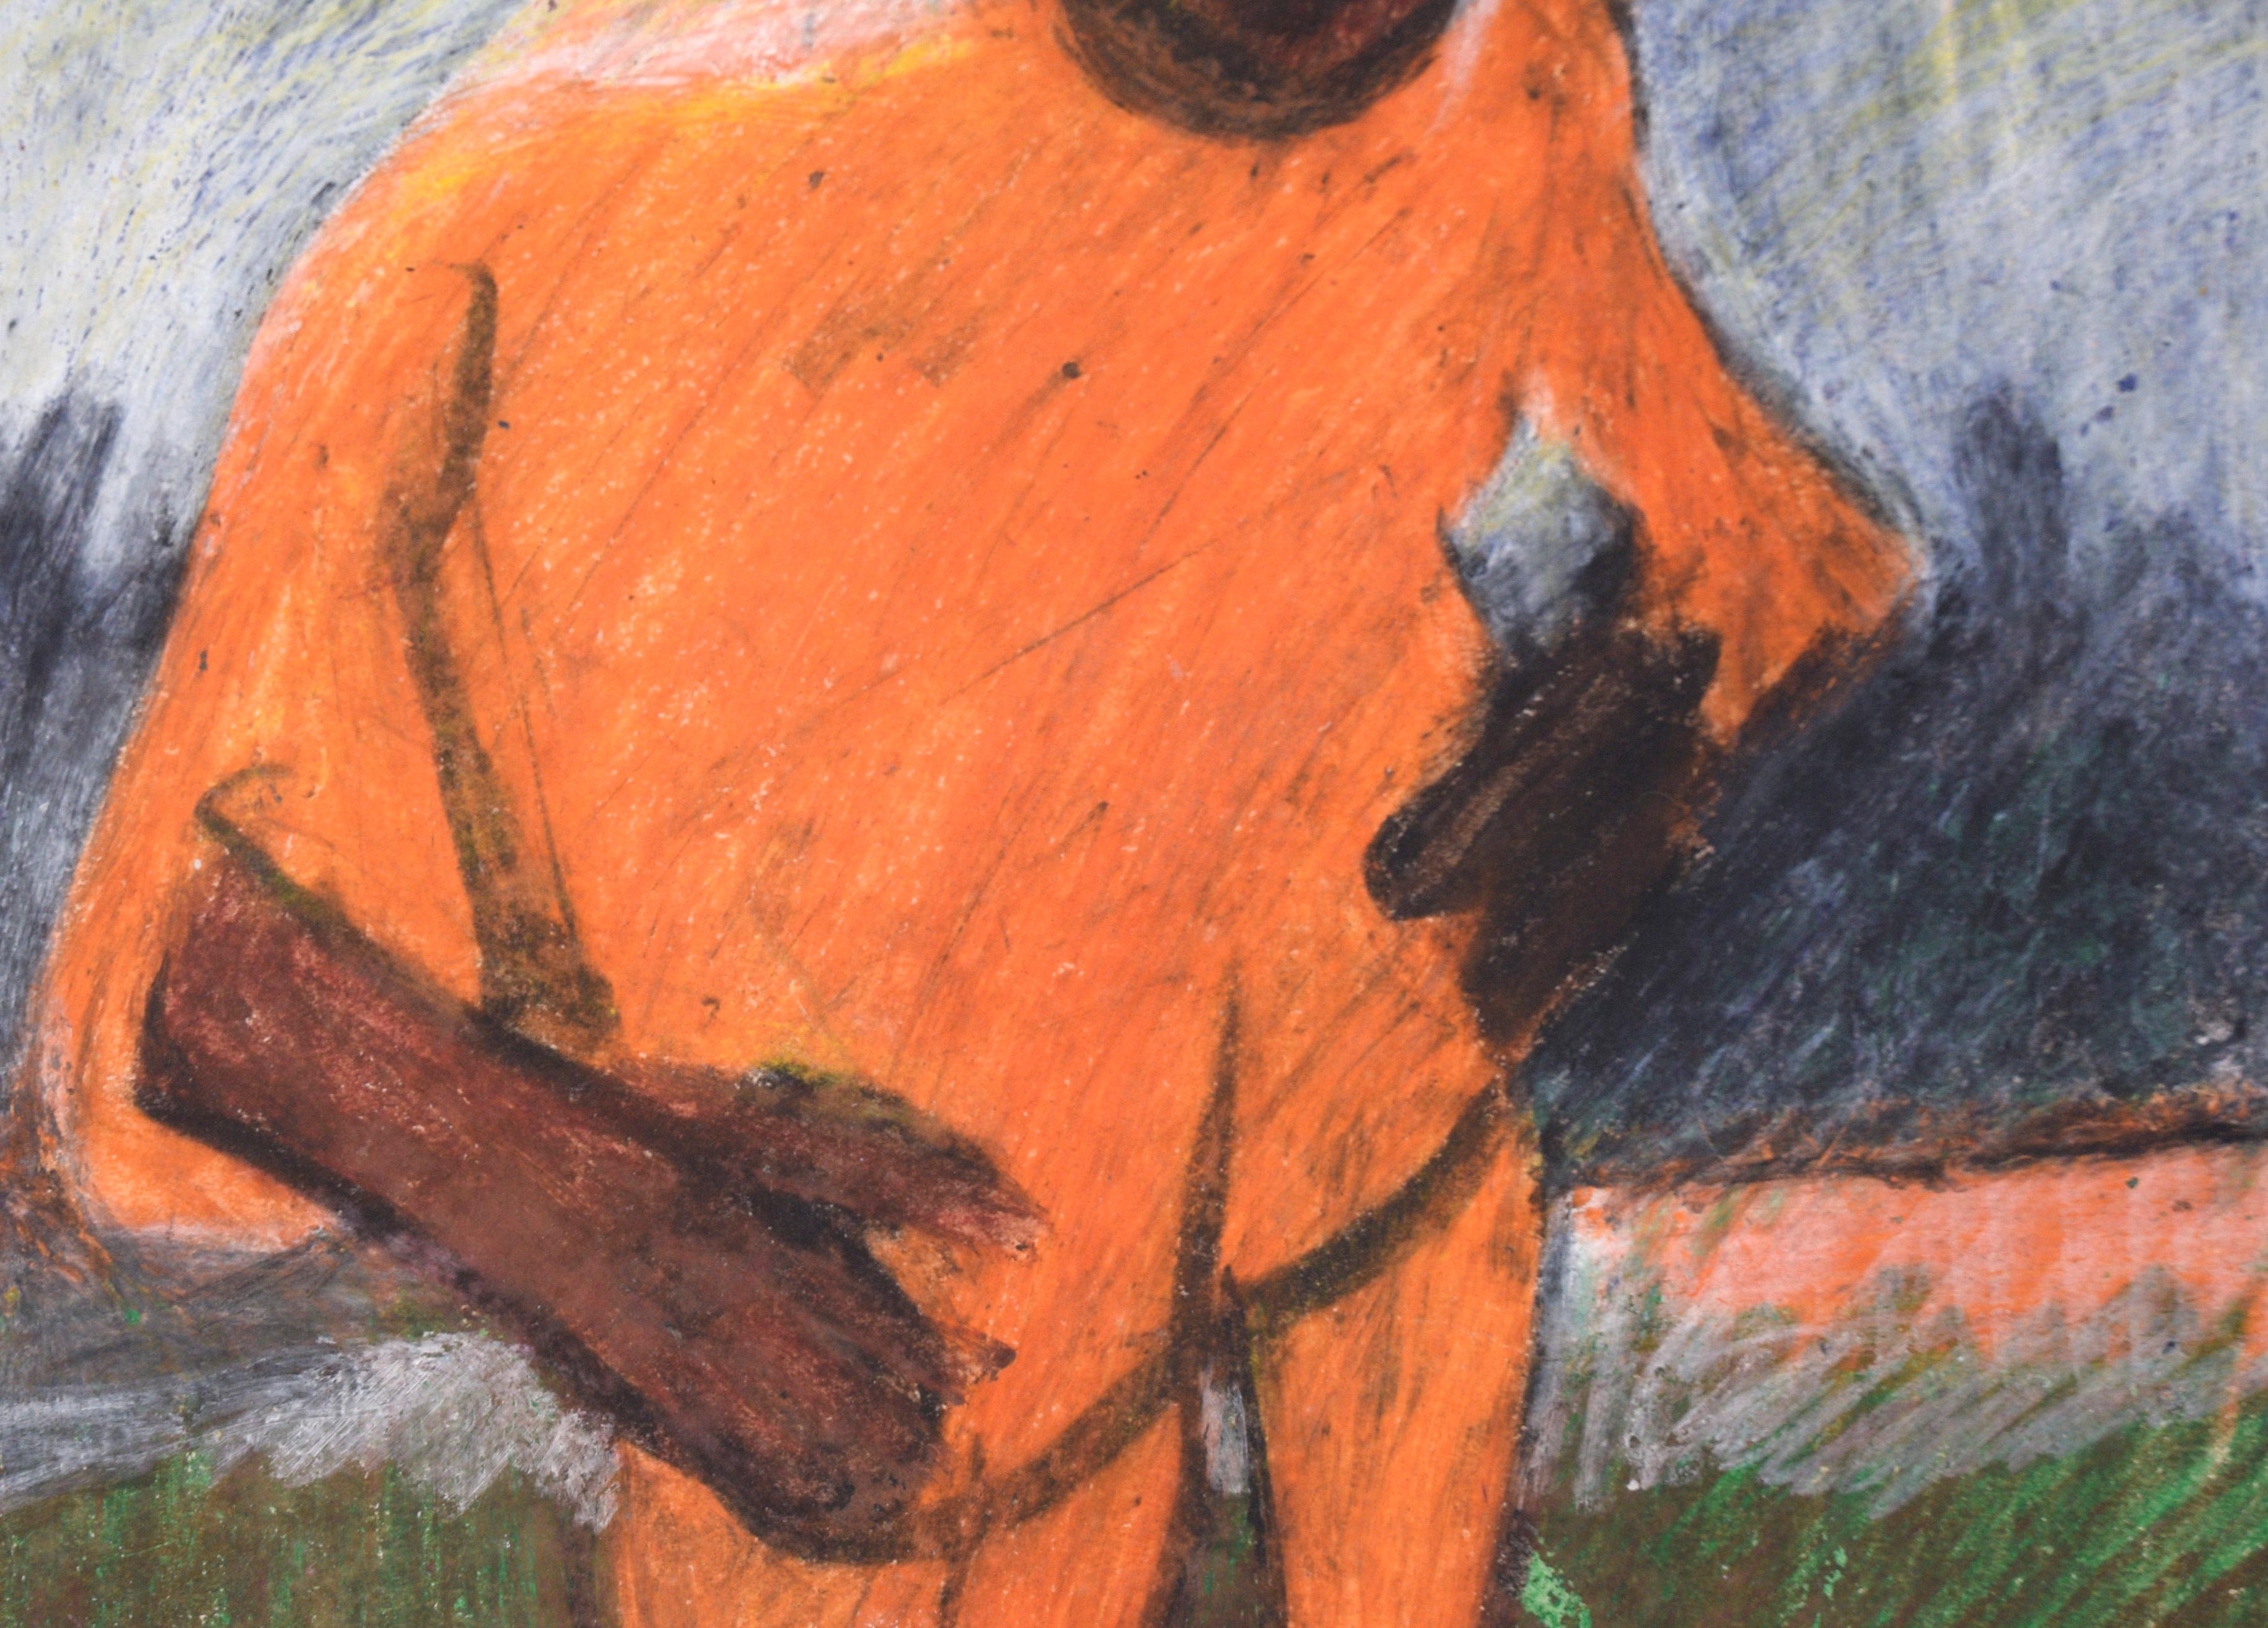 Track Star - Abstrahiertes Porträt eines afroamerikanischen Mannes in Pastell auf Papier

Kräftige und phantasievolle Pastellzeichnung eines Mannes im Trainingsanzug von einem unbekannten Künstler (20. Jahrhundert). Ein afroamerikanischer Mann steht